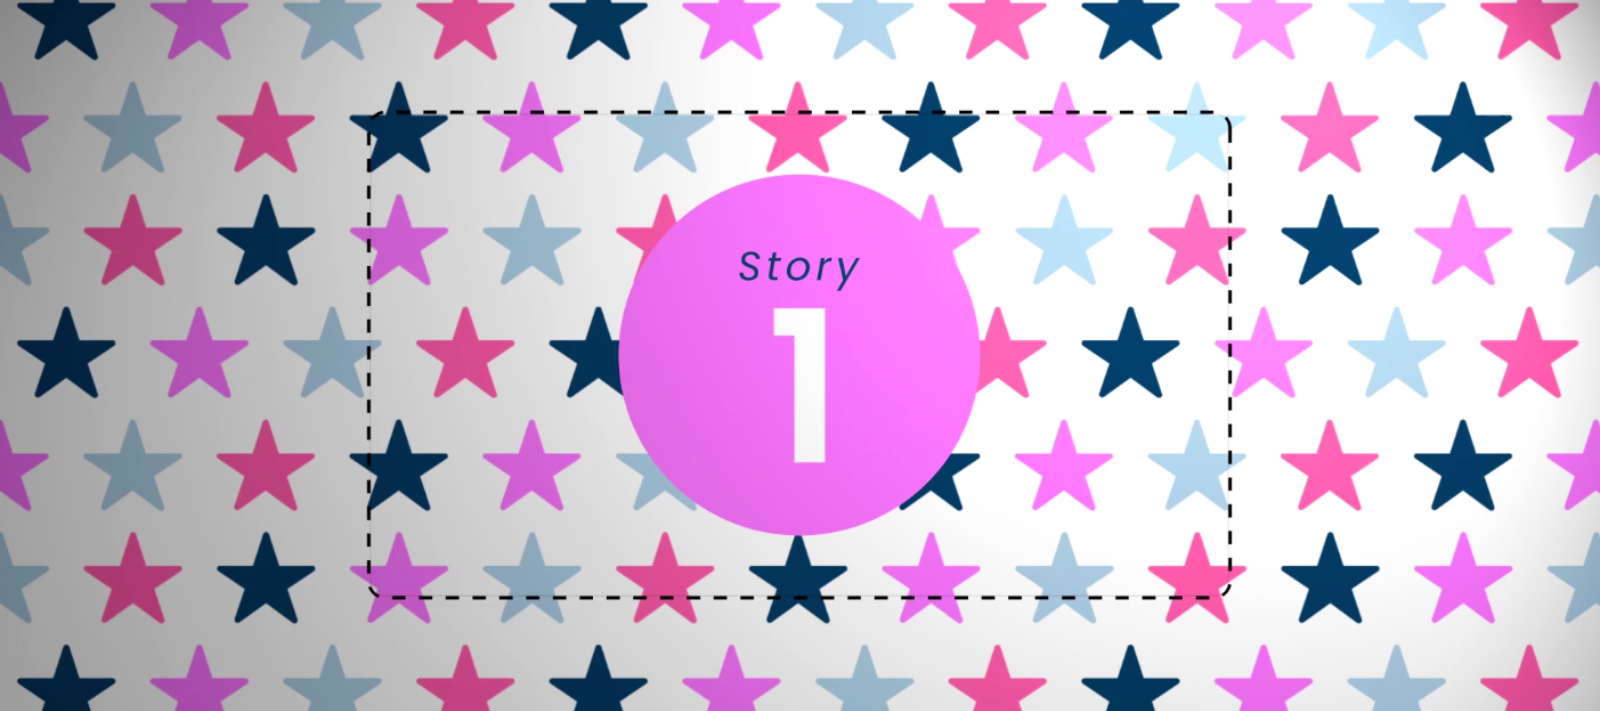 Startup-Essen – Storykalender 2021 startet mit den Best-of-2021 Geschichten auf Instagram